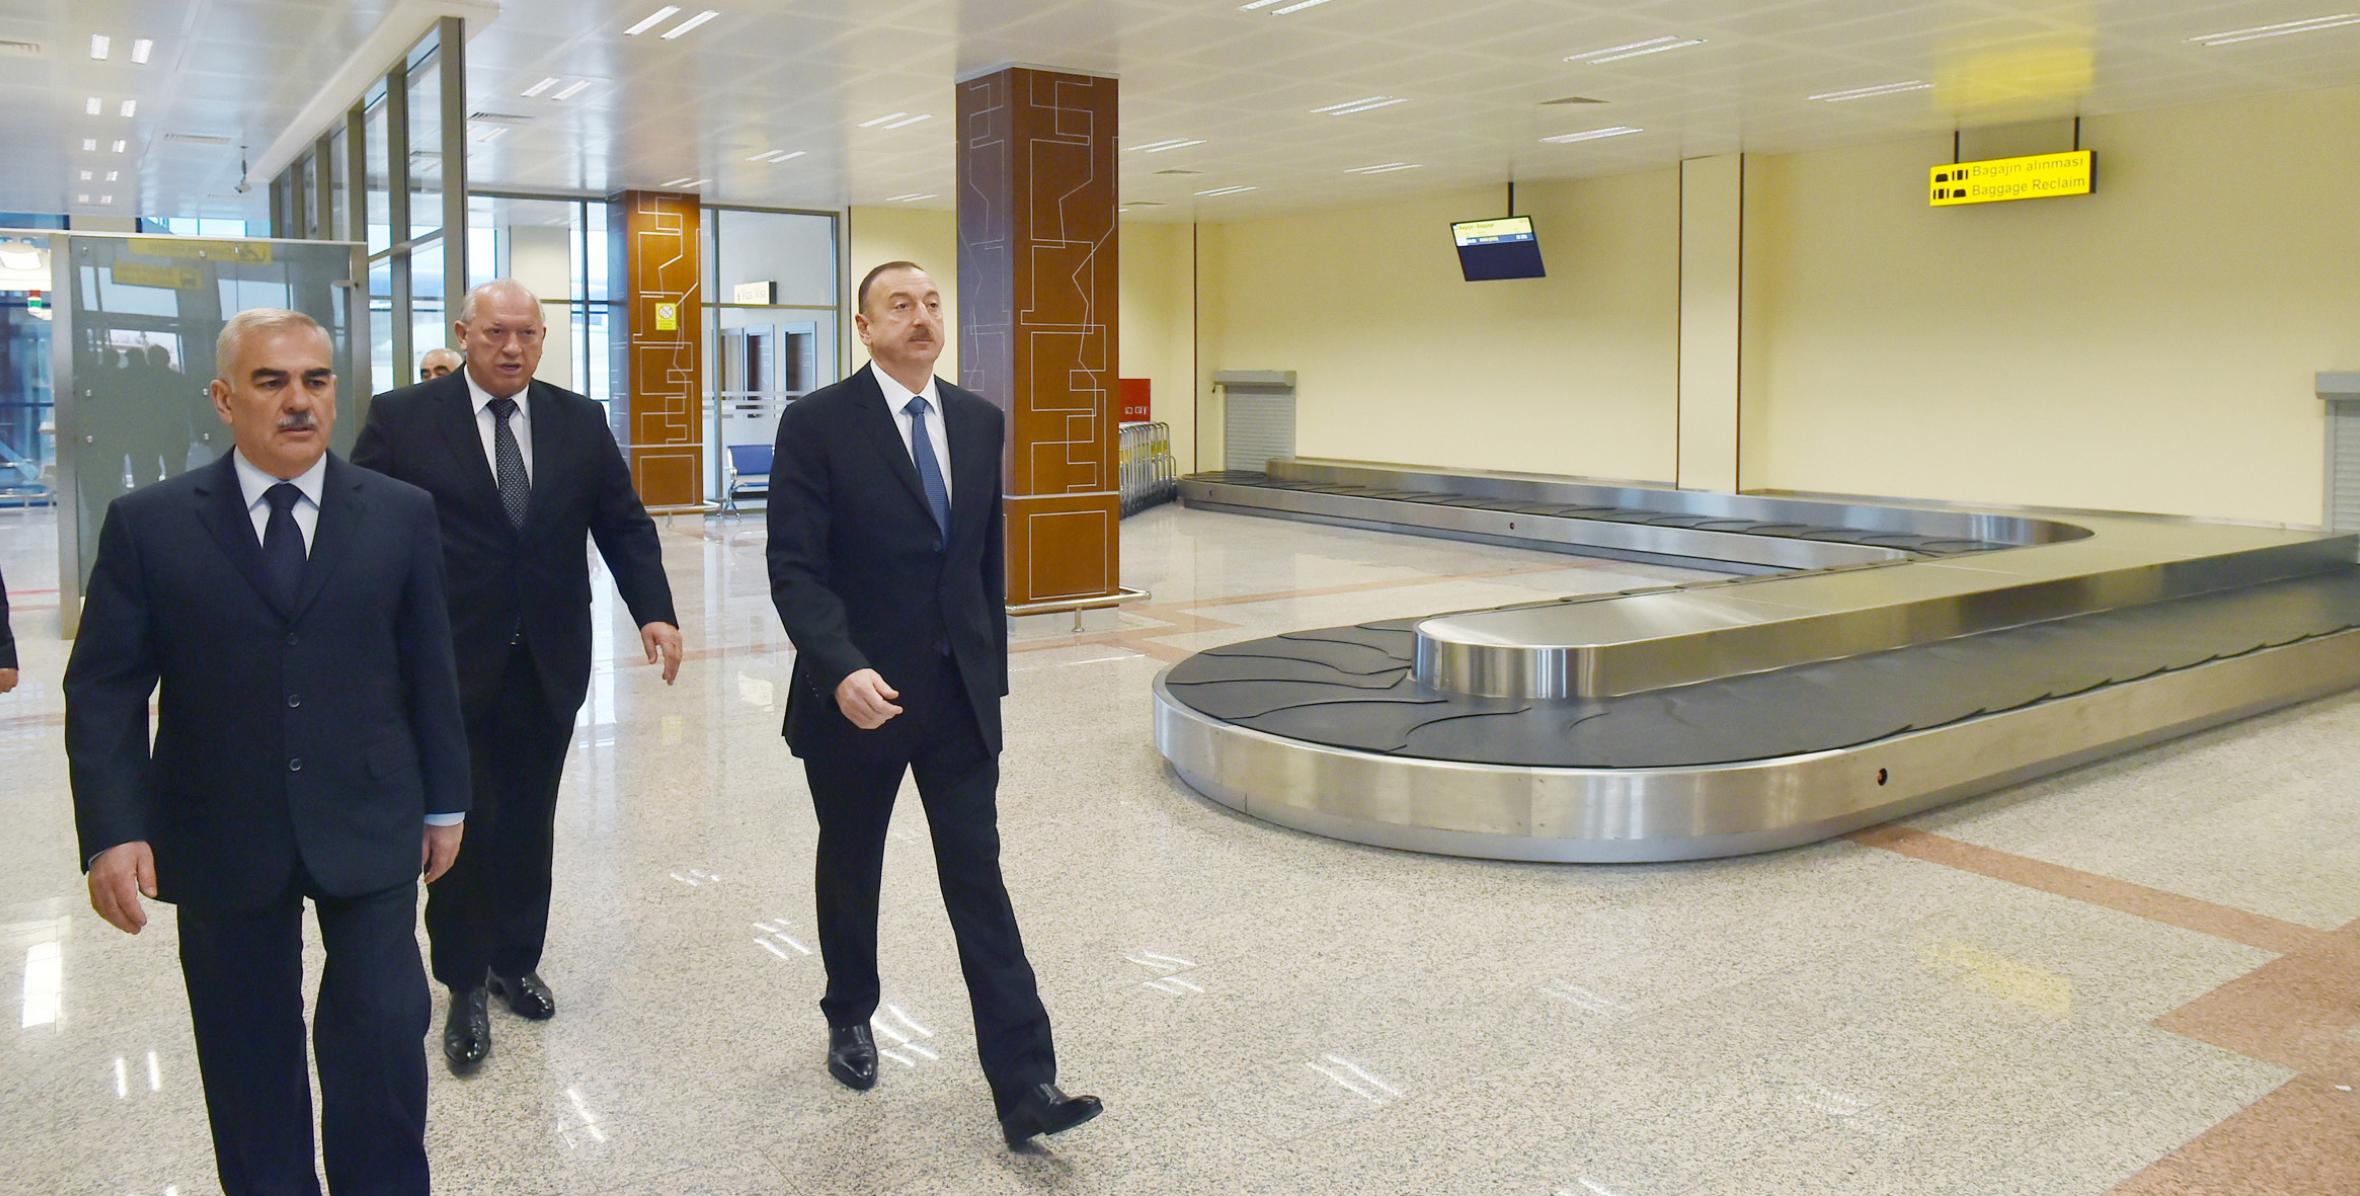 Ильхам Алиев ознакомился с состоянием «Восточного терминала» Нахчыванского международного аэропорта после реконструкции